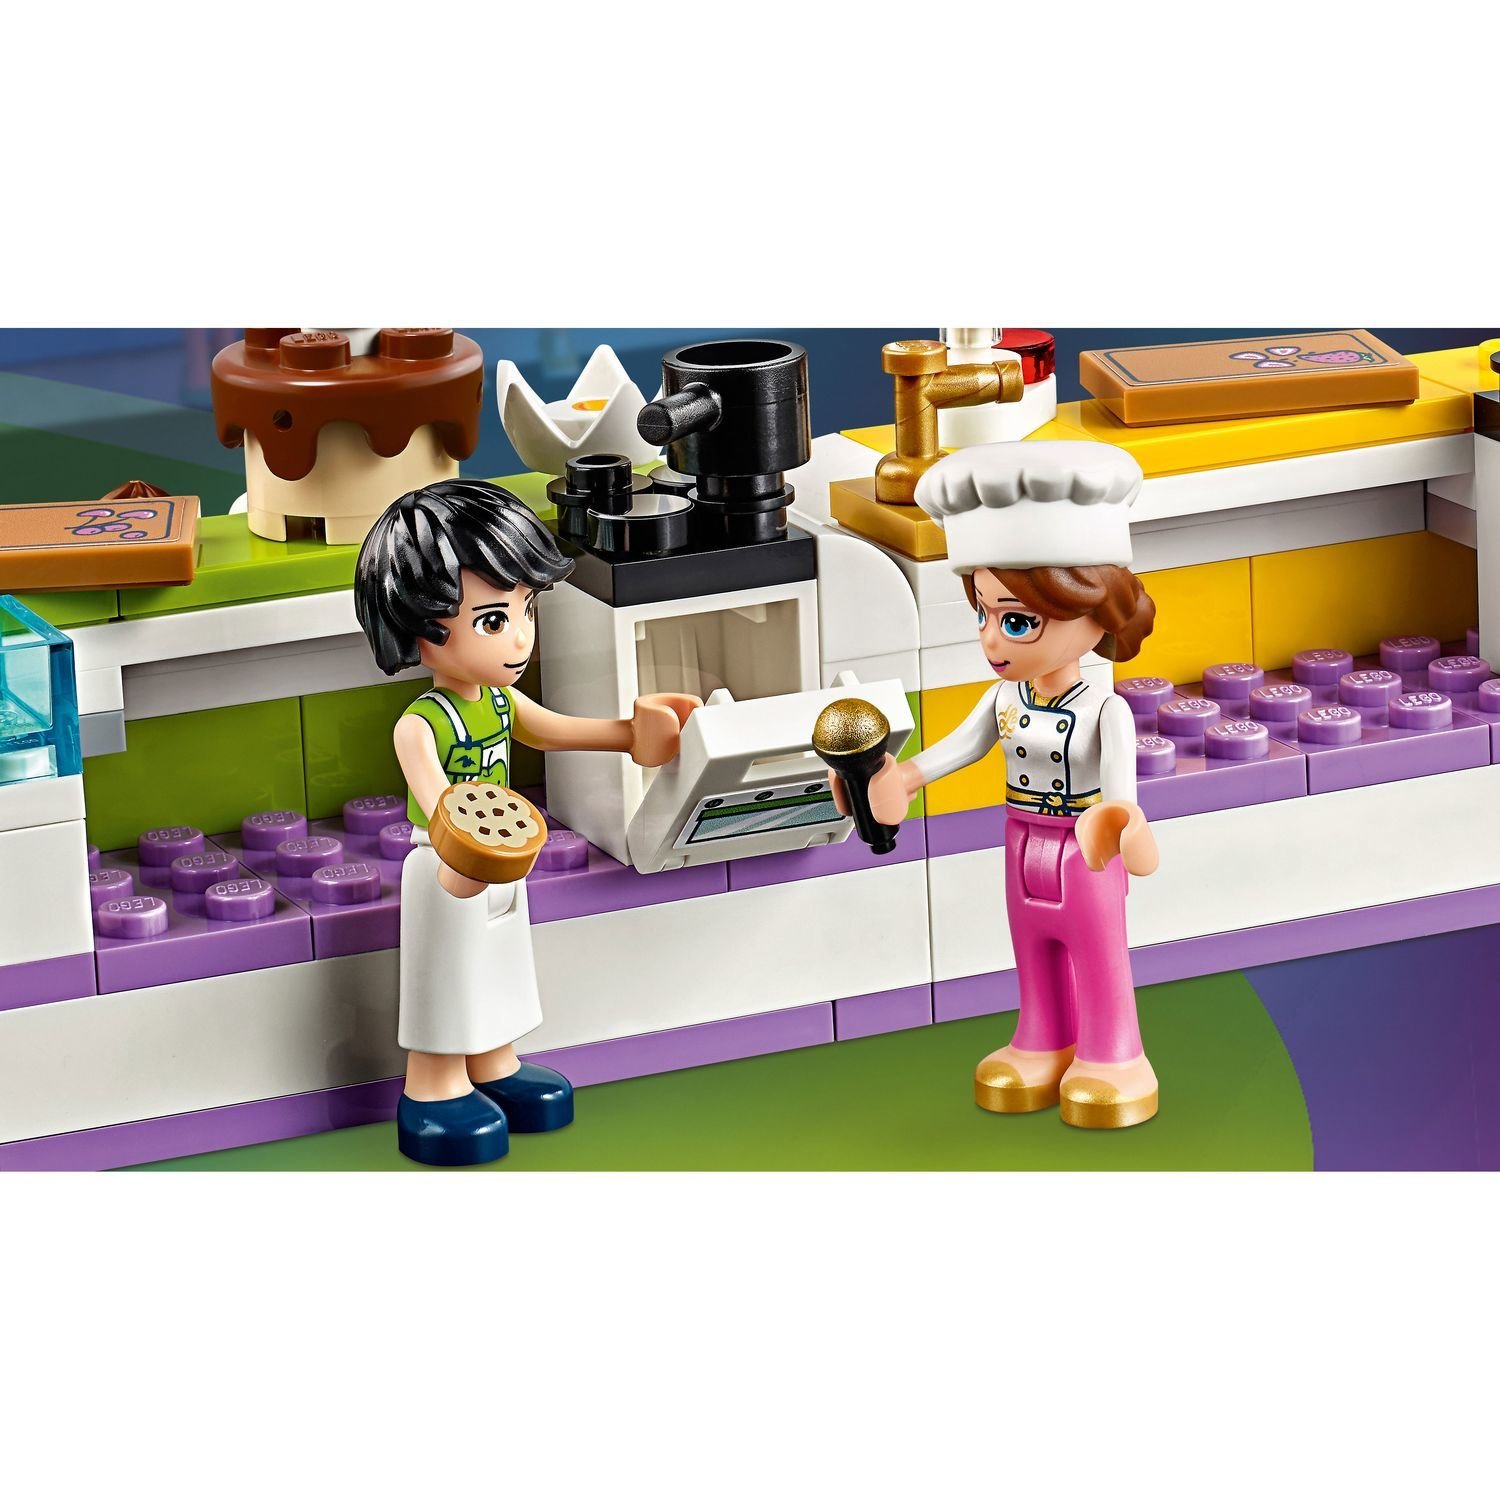 Lego Friends 41393 Соревнование кондитеров